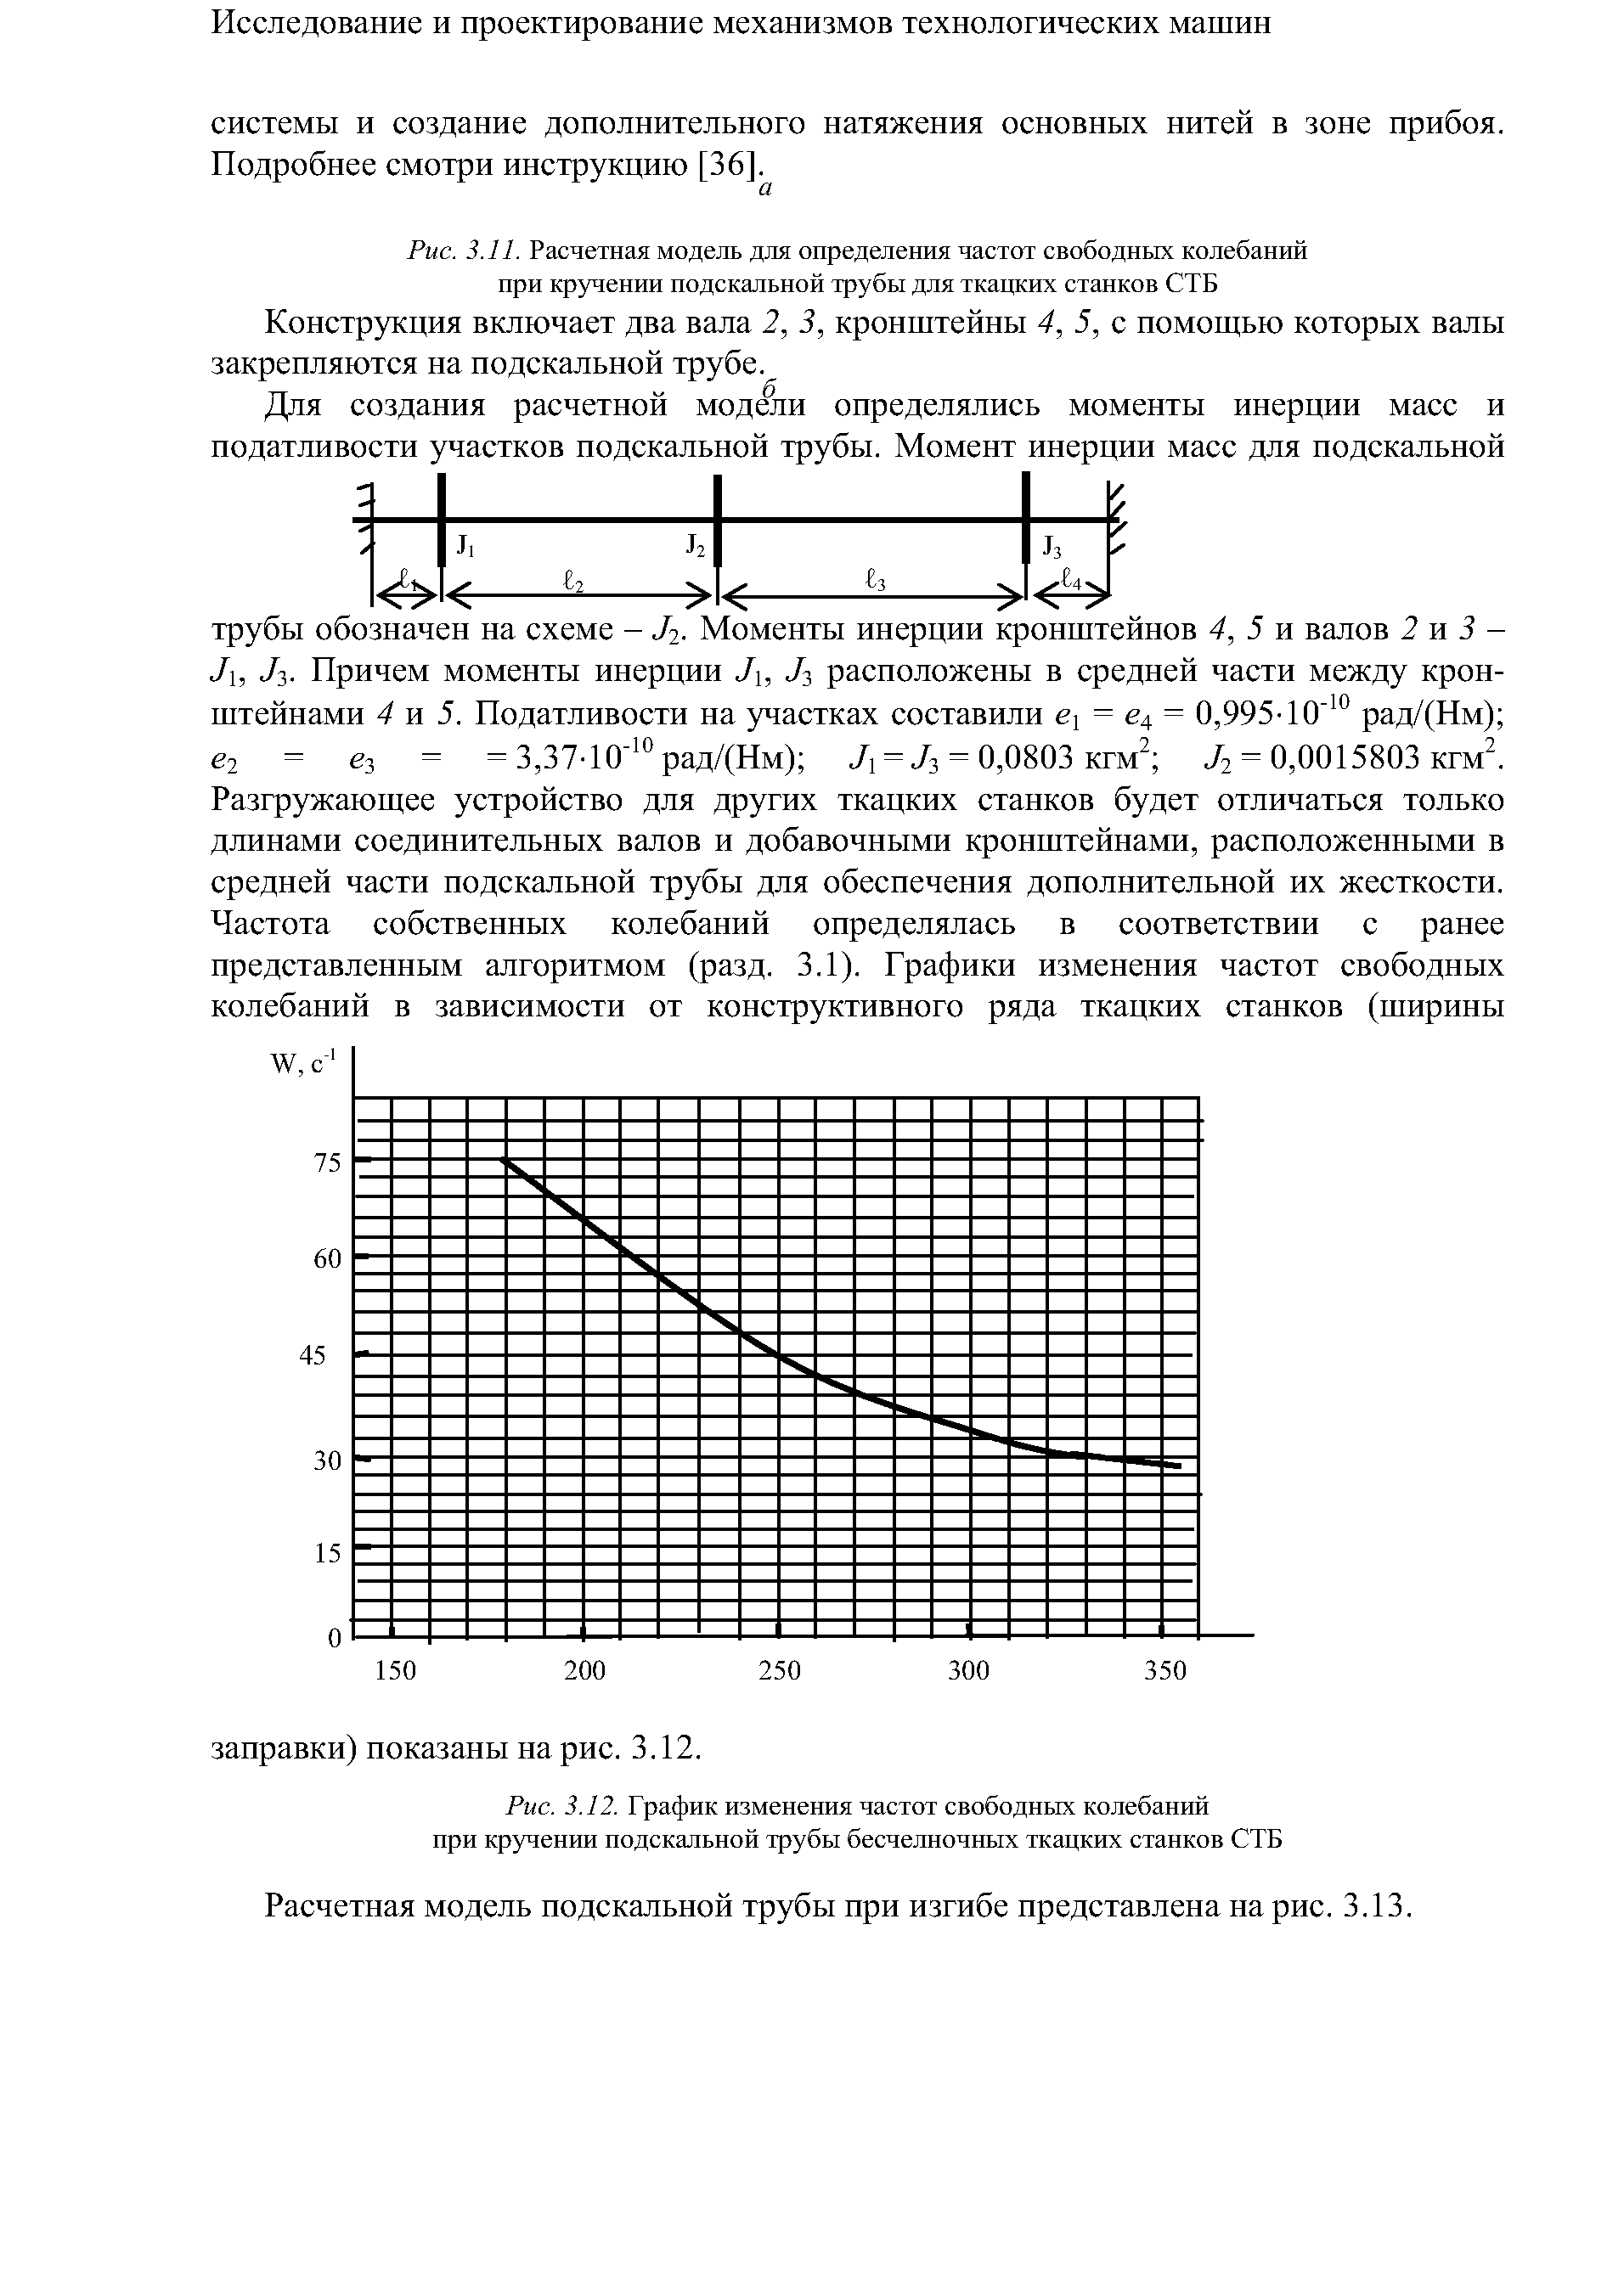 Расчетная модель подскальной трубы при изгибе представлена на рис. 3.13.
